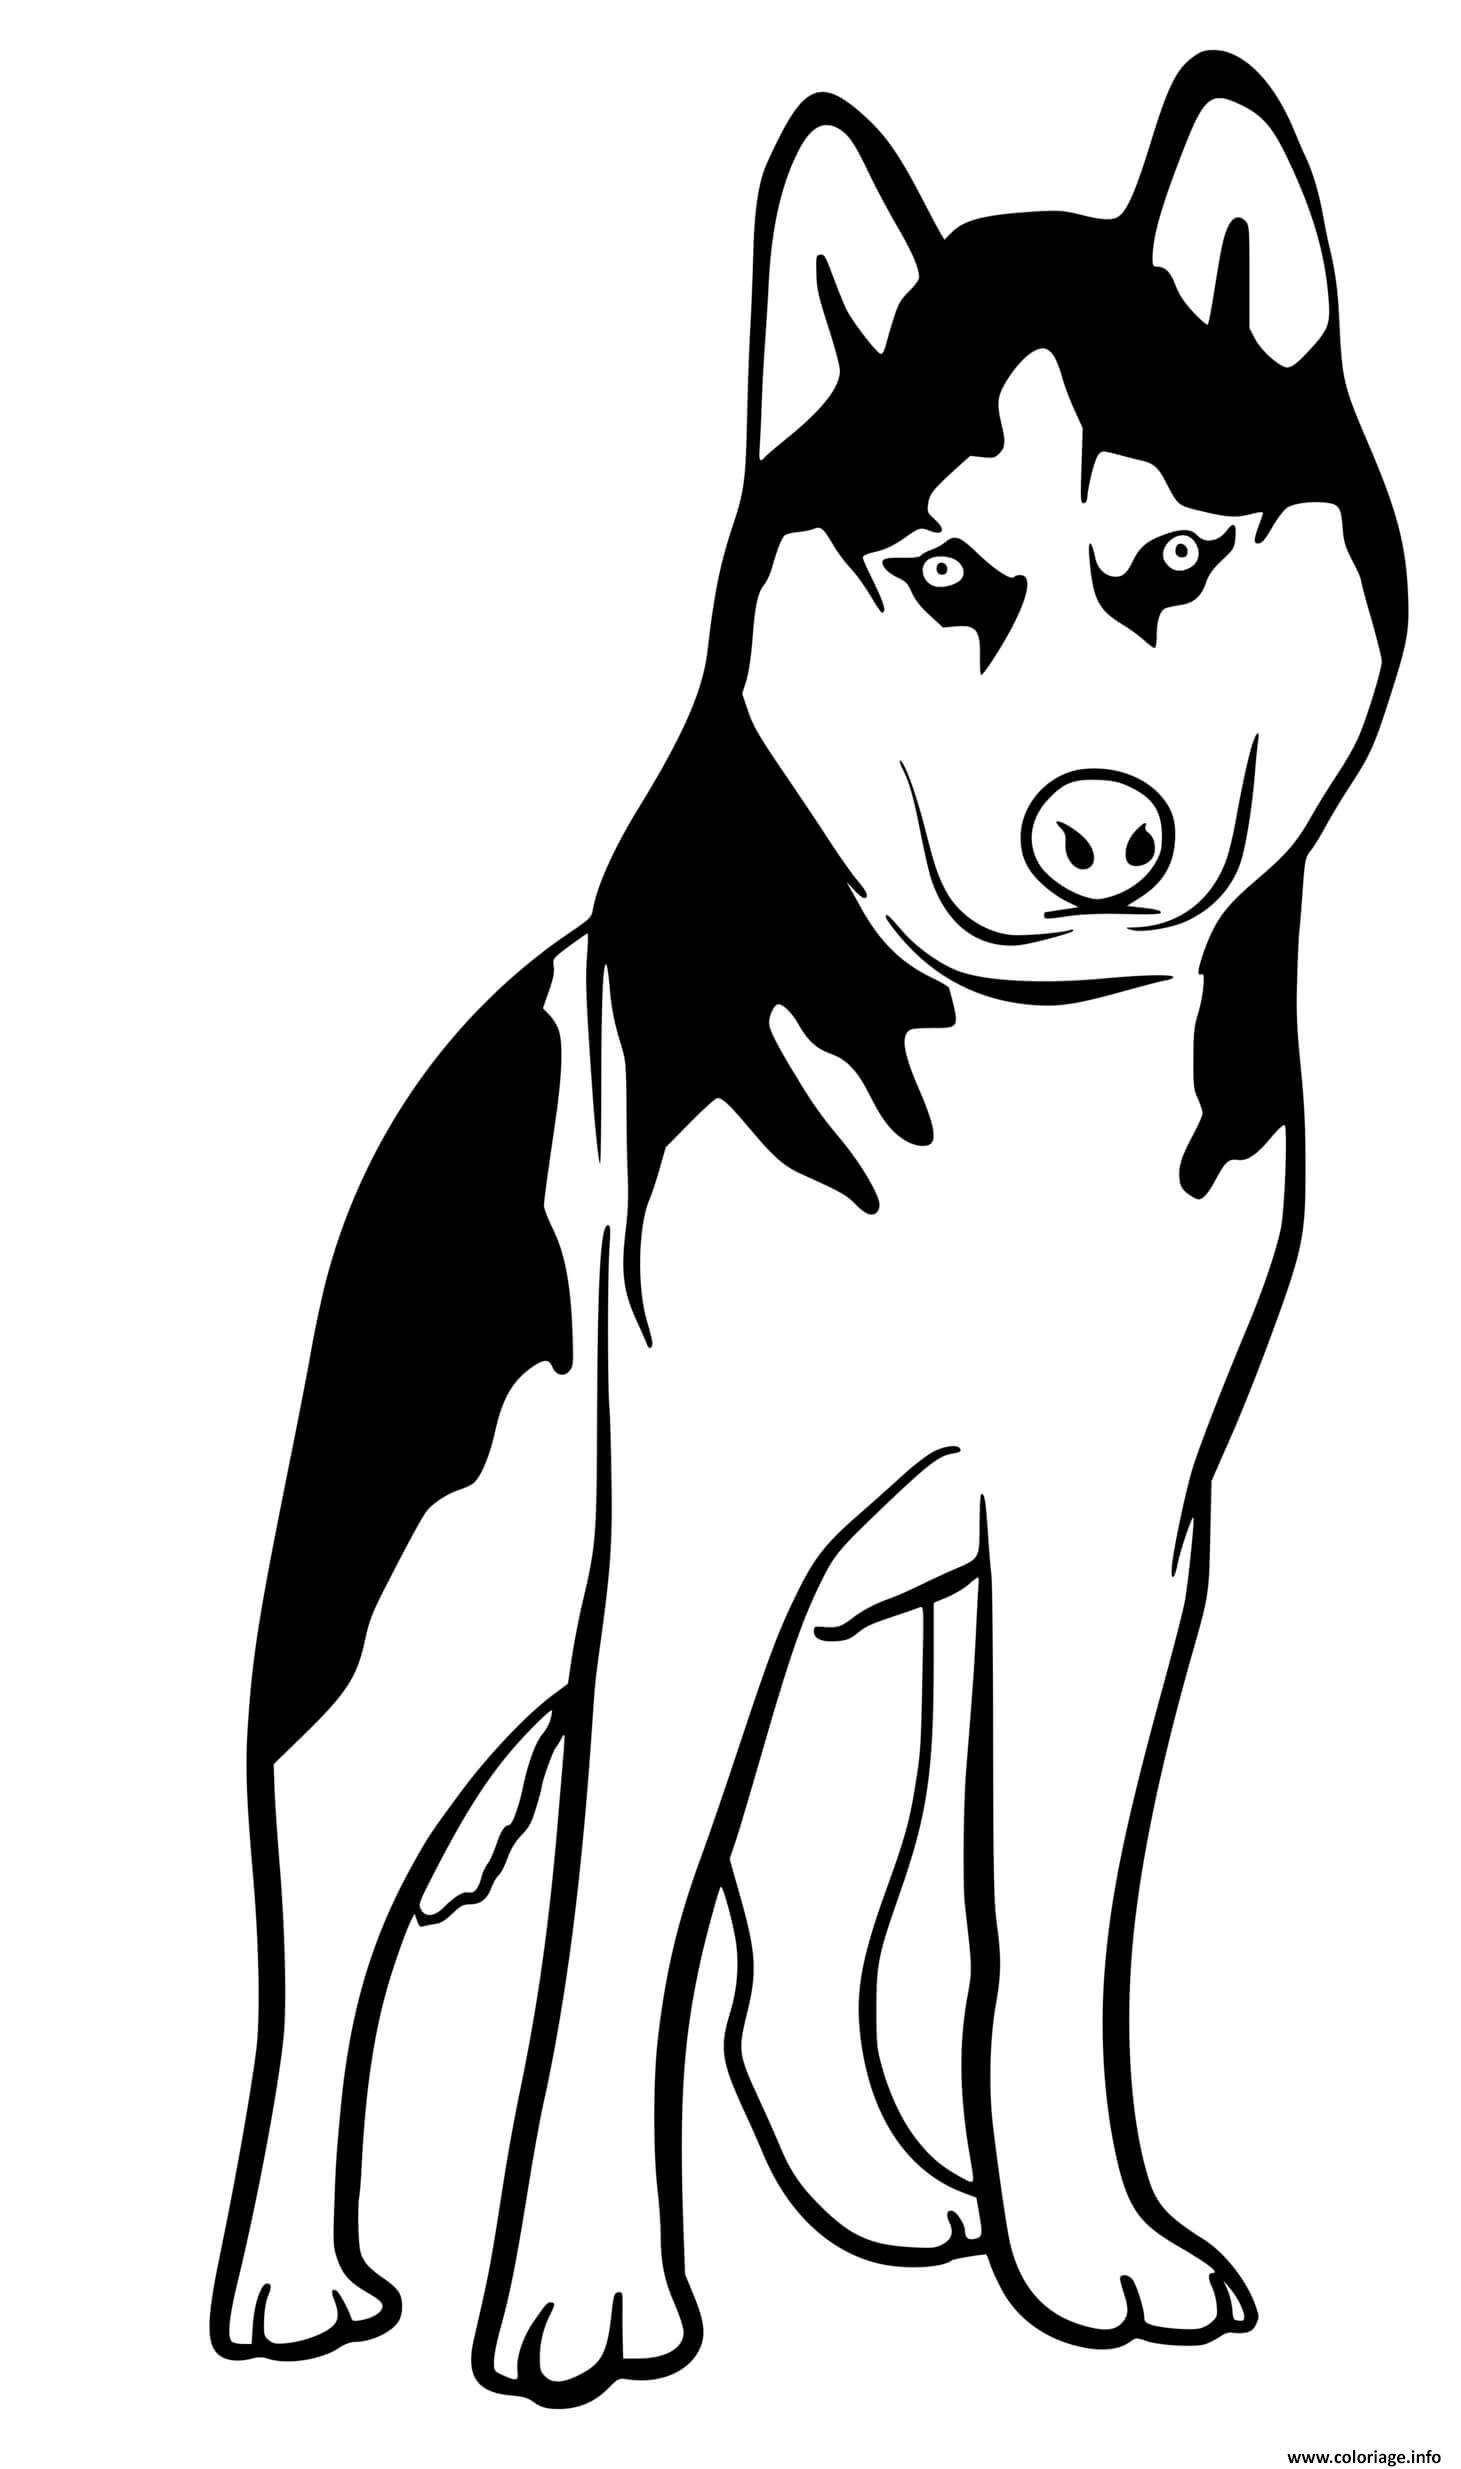 Dessin Husky dog Coloriage Gratuit à Imprimer